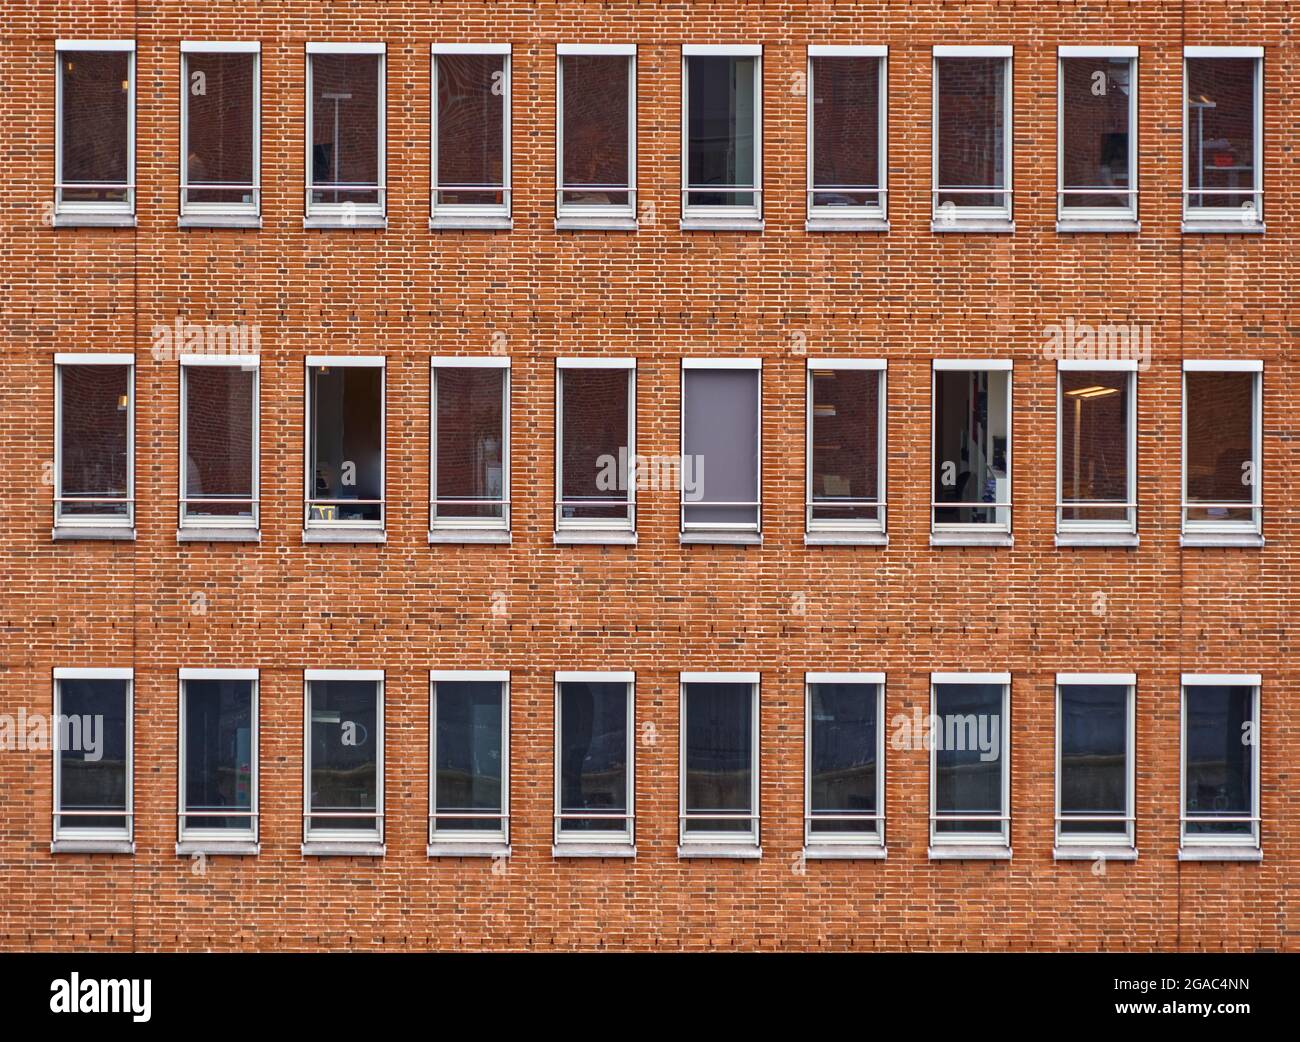 Monotone Fassade aus roten Ziegelsteinen eines Bürohochhauses mit langen rechteckigen Fenstern ohne Vorhänge im Stadtzentrum Stockfoto